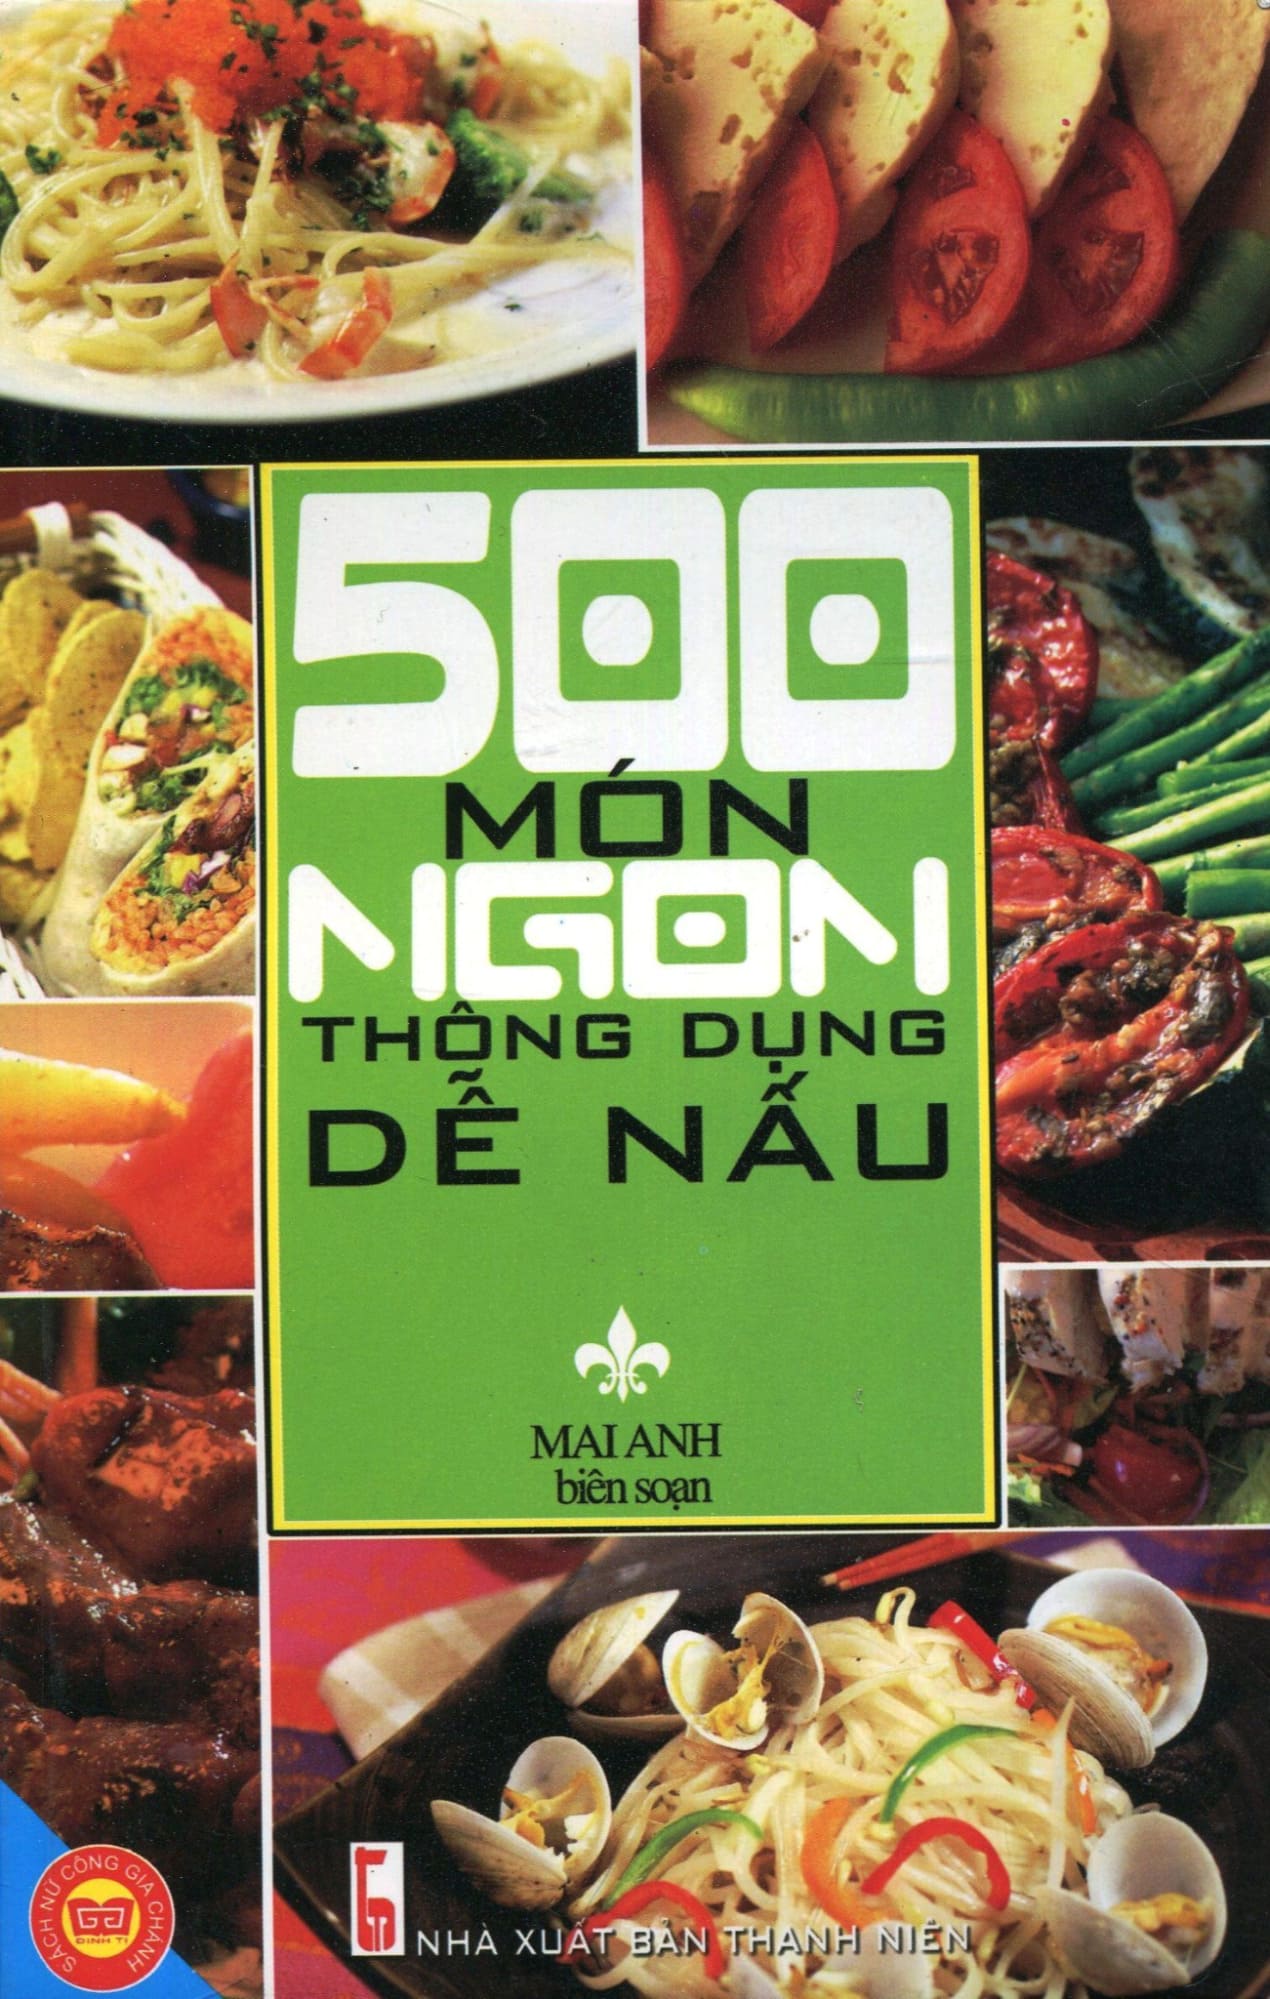 Sách dạy nấu ăn dành cho người Việt